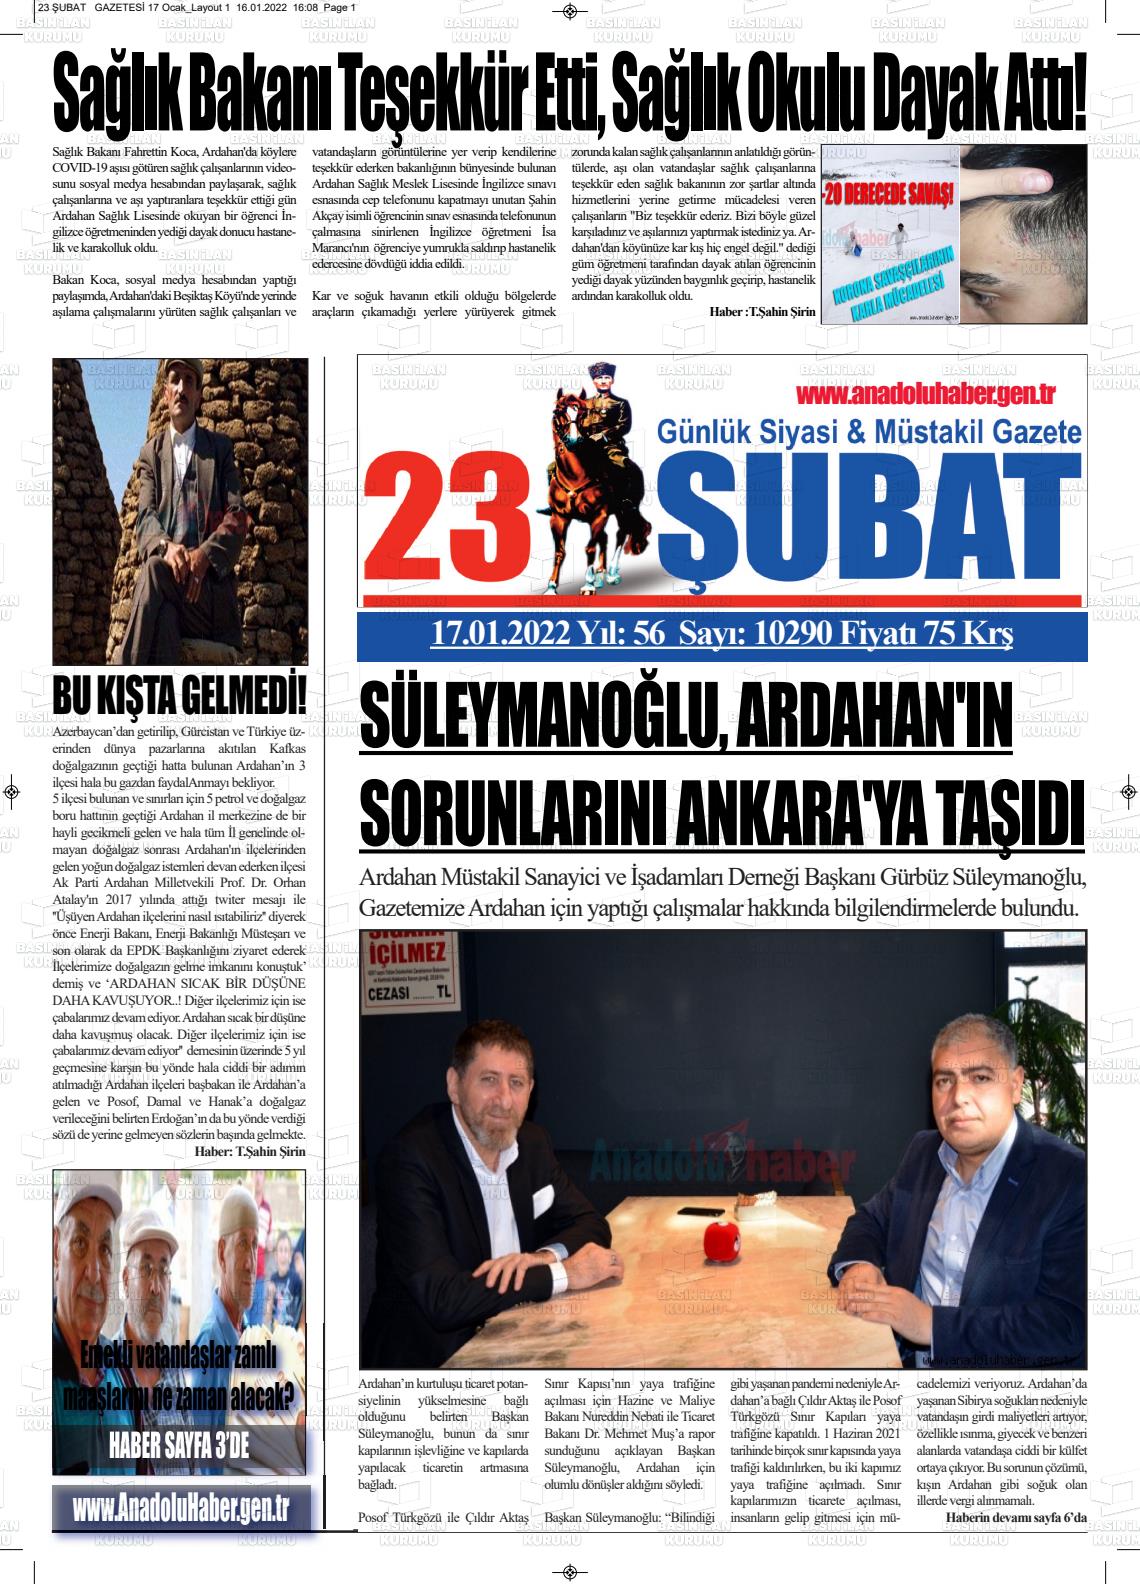 17 Ocak 2022 23 Şubat Gazete Manşeti